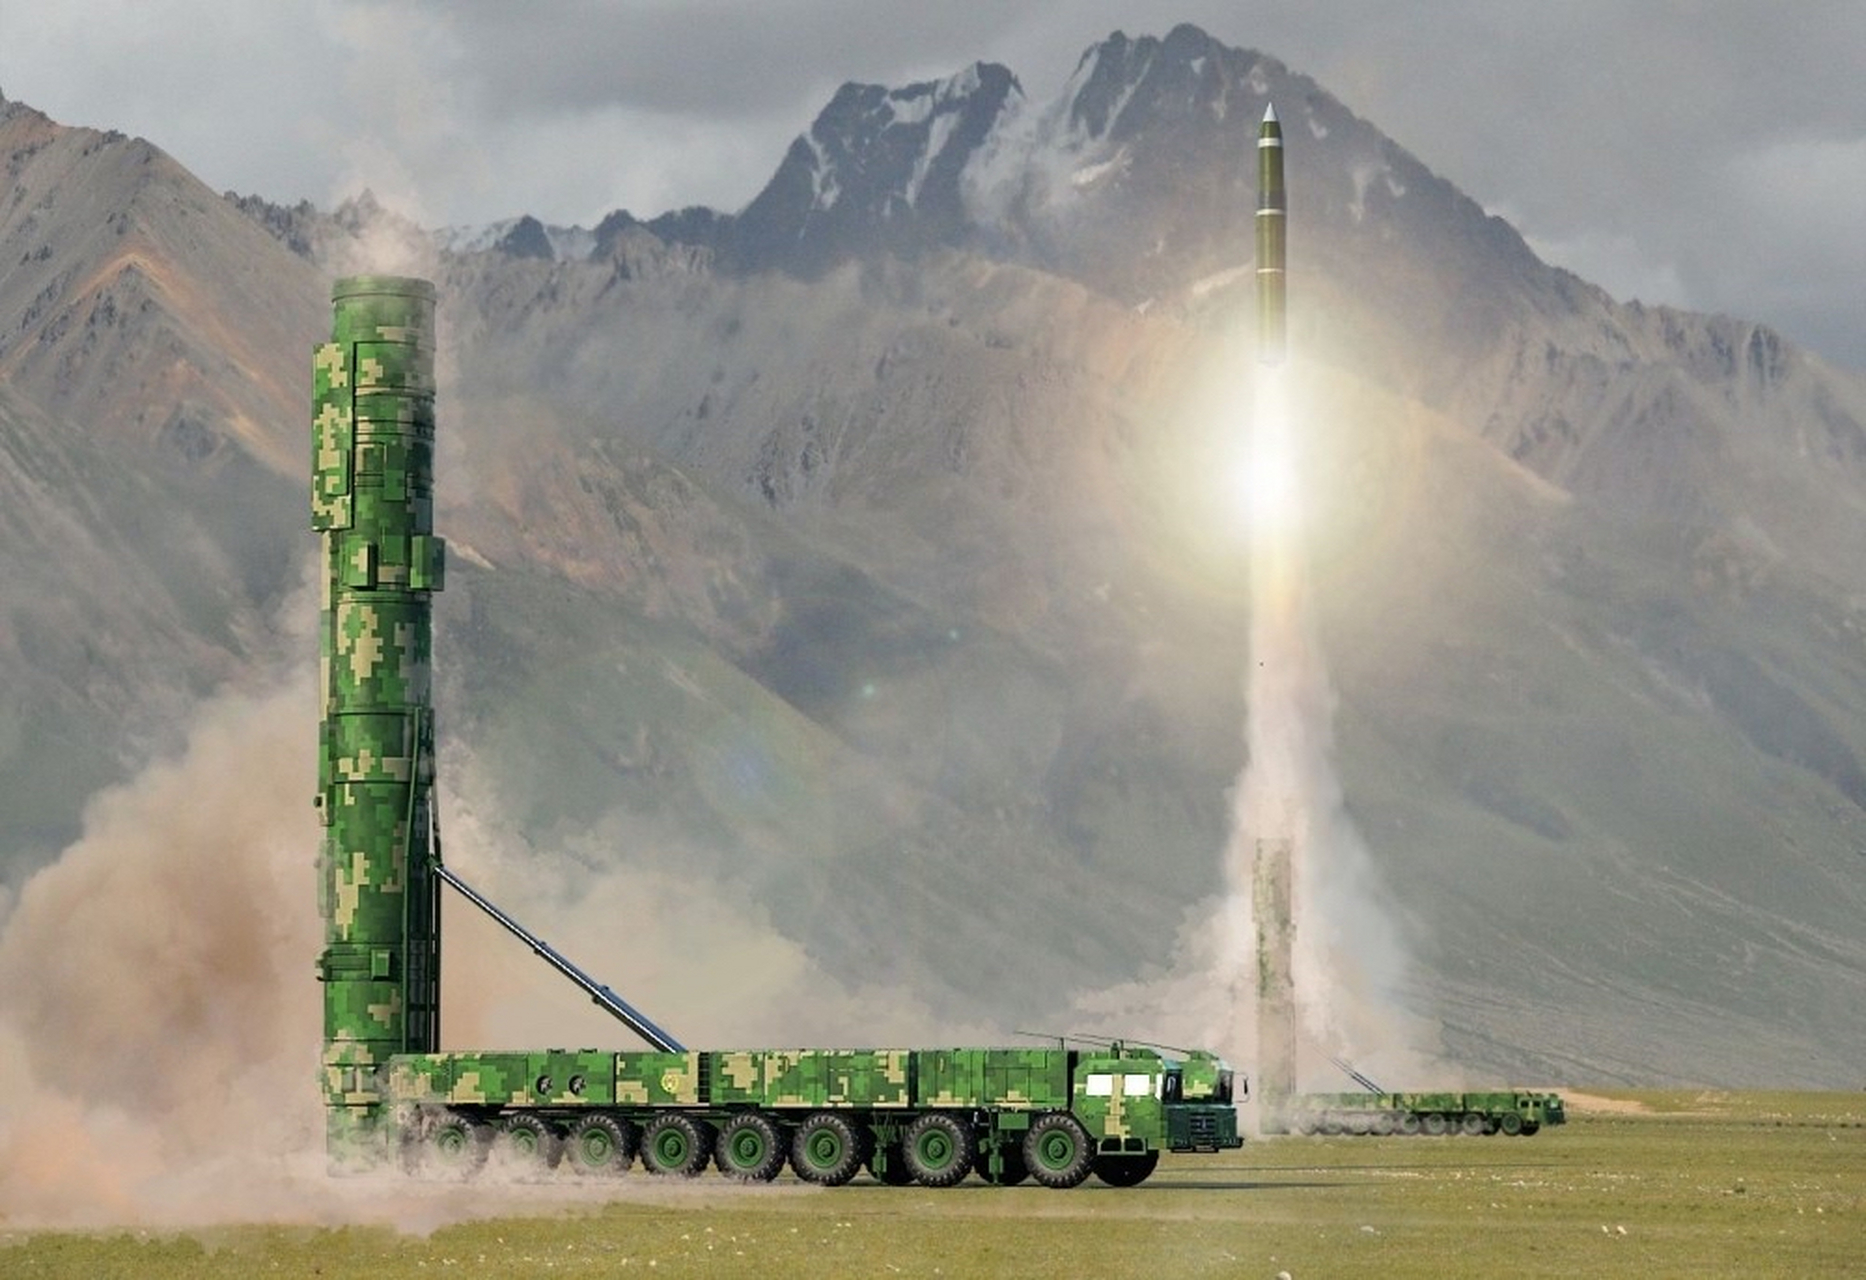 东风41导弹是中国火箭军的重要战略武器,具备远程打击能力,射程达到